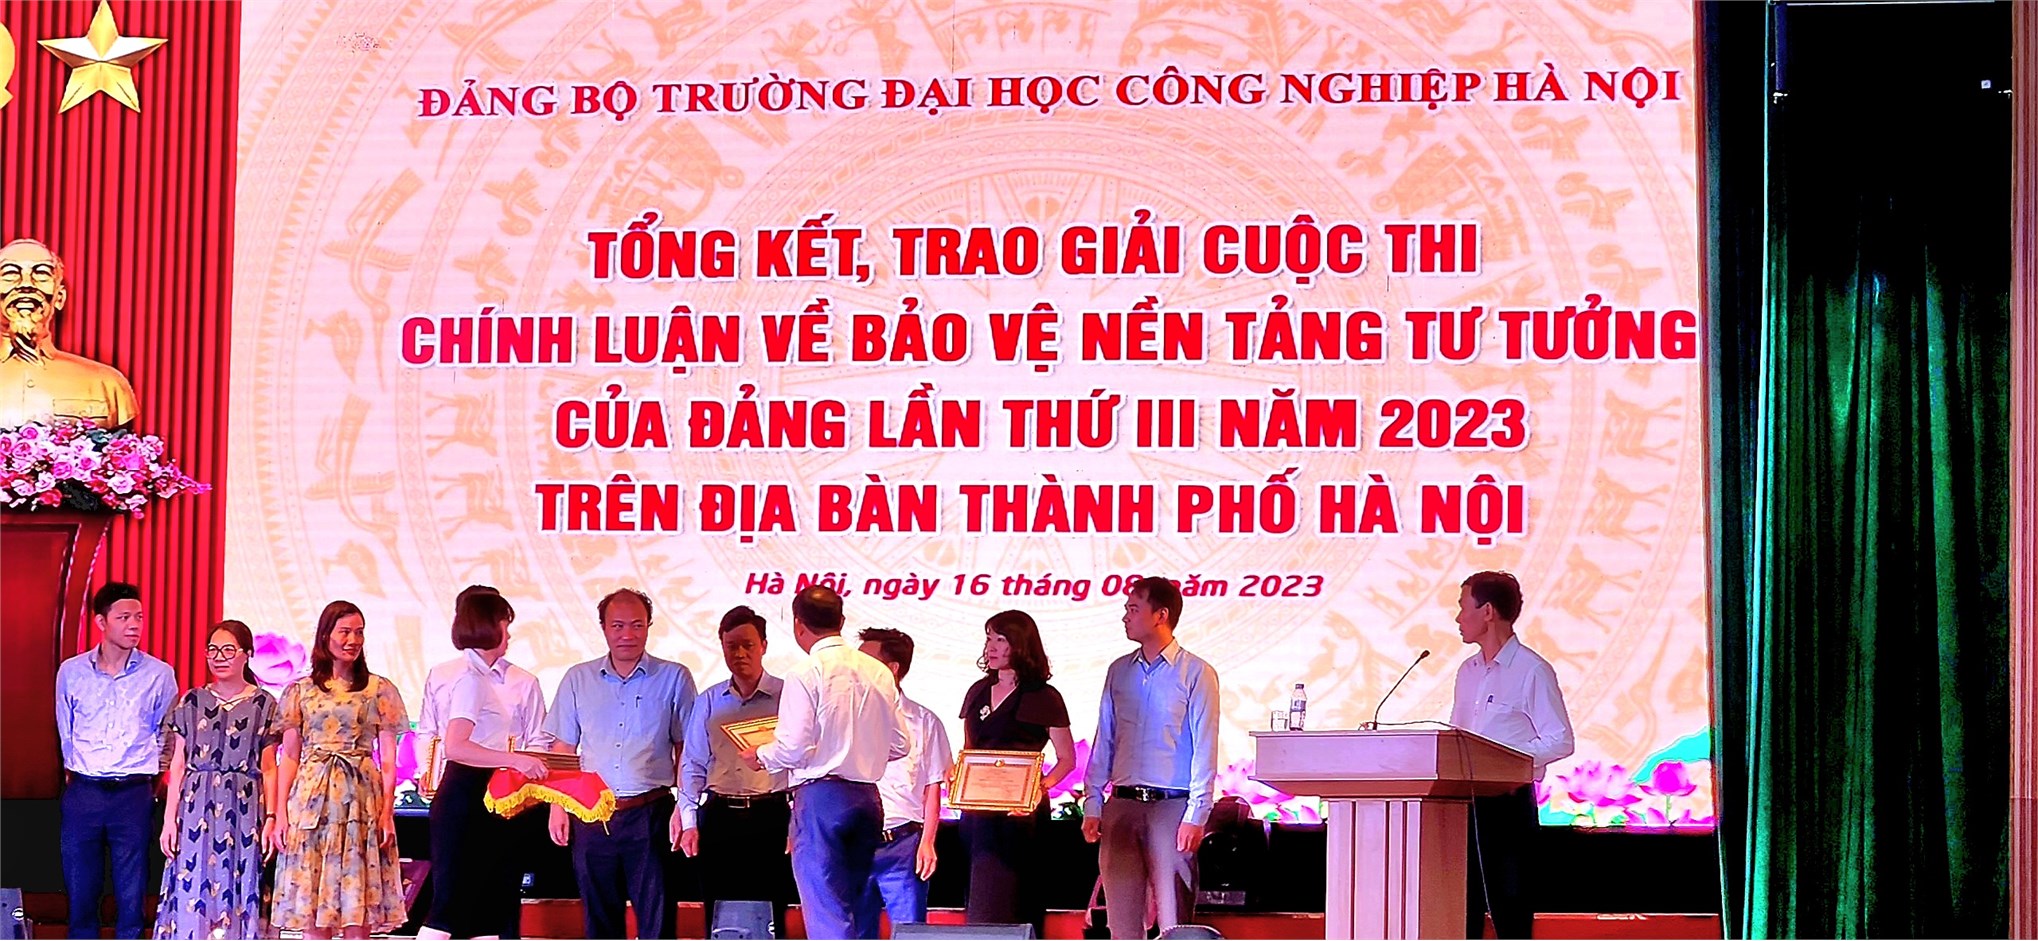 Cuộc thi chính luận về bảo vệ nền tảng tư tưởng của Đảng; đấu tranh, phản bác các quan điểm sai trái, thù địch – Haui 2023